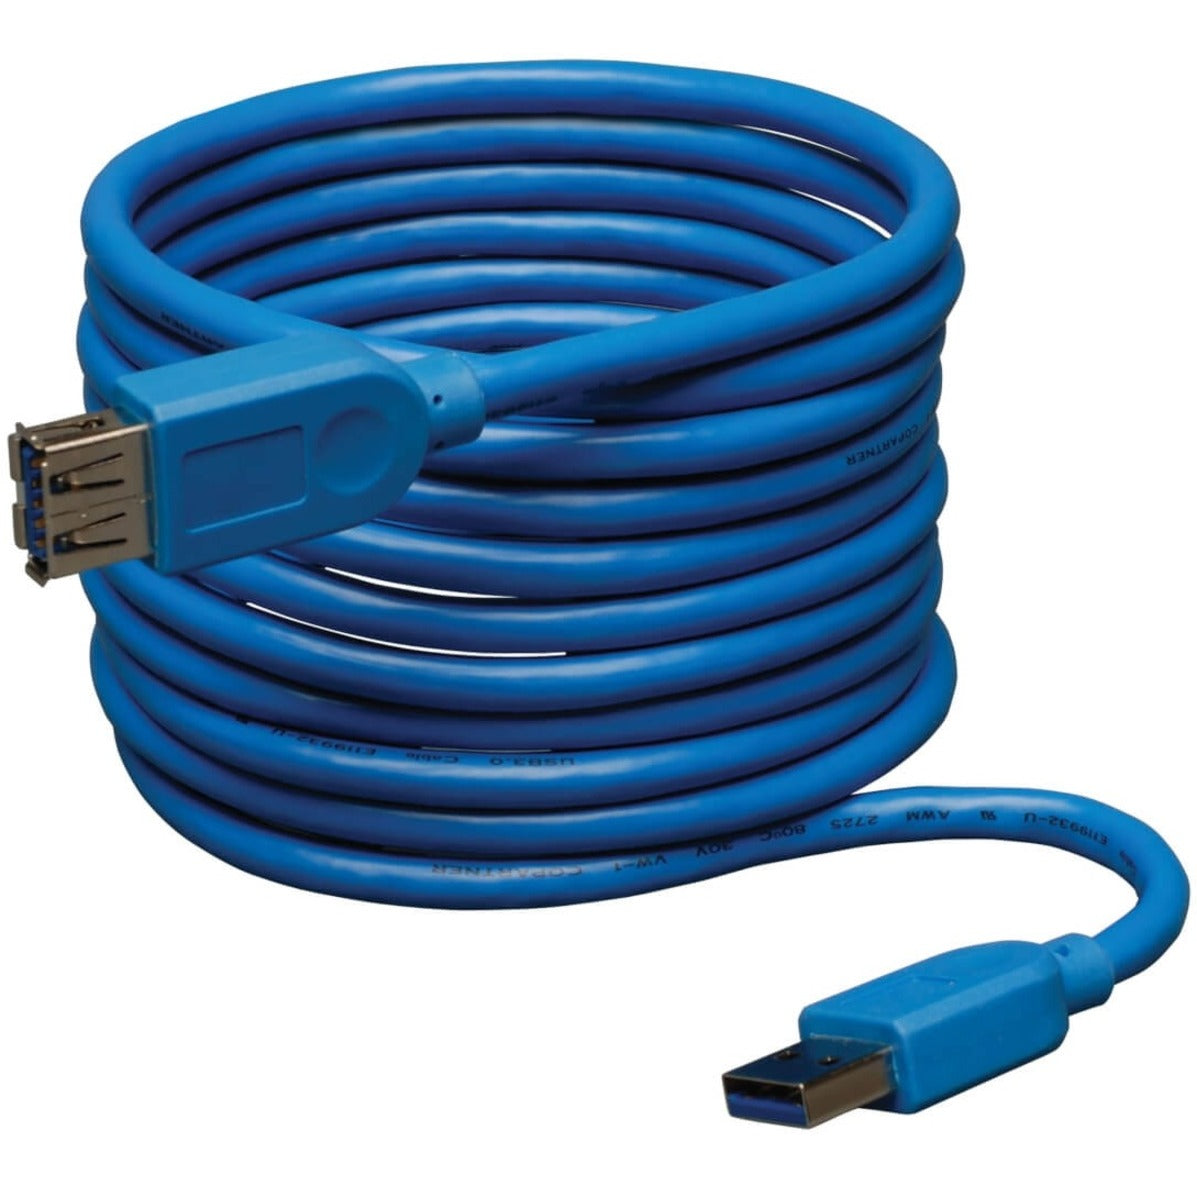 特兰普利特 U324-010 USB 3.0 超速延长线 10F 蓝色 特兰普利特